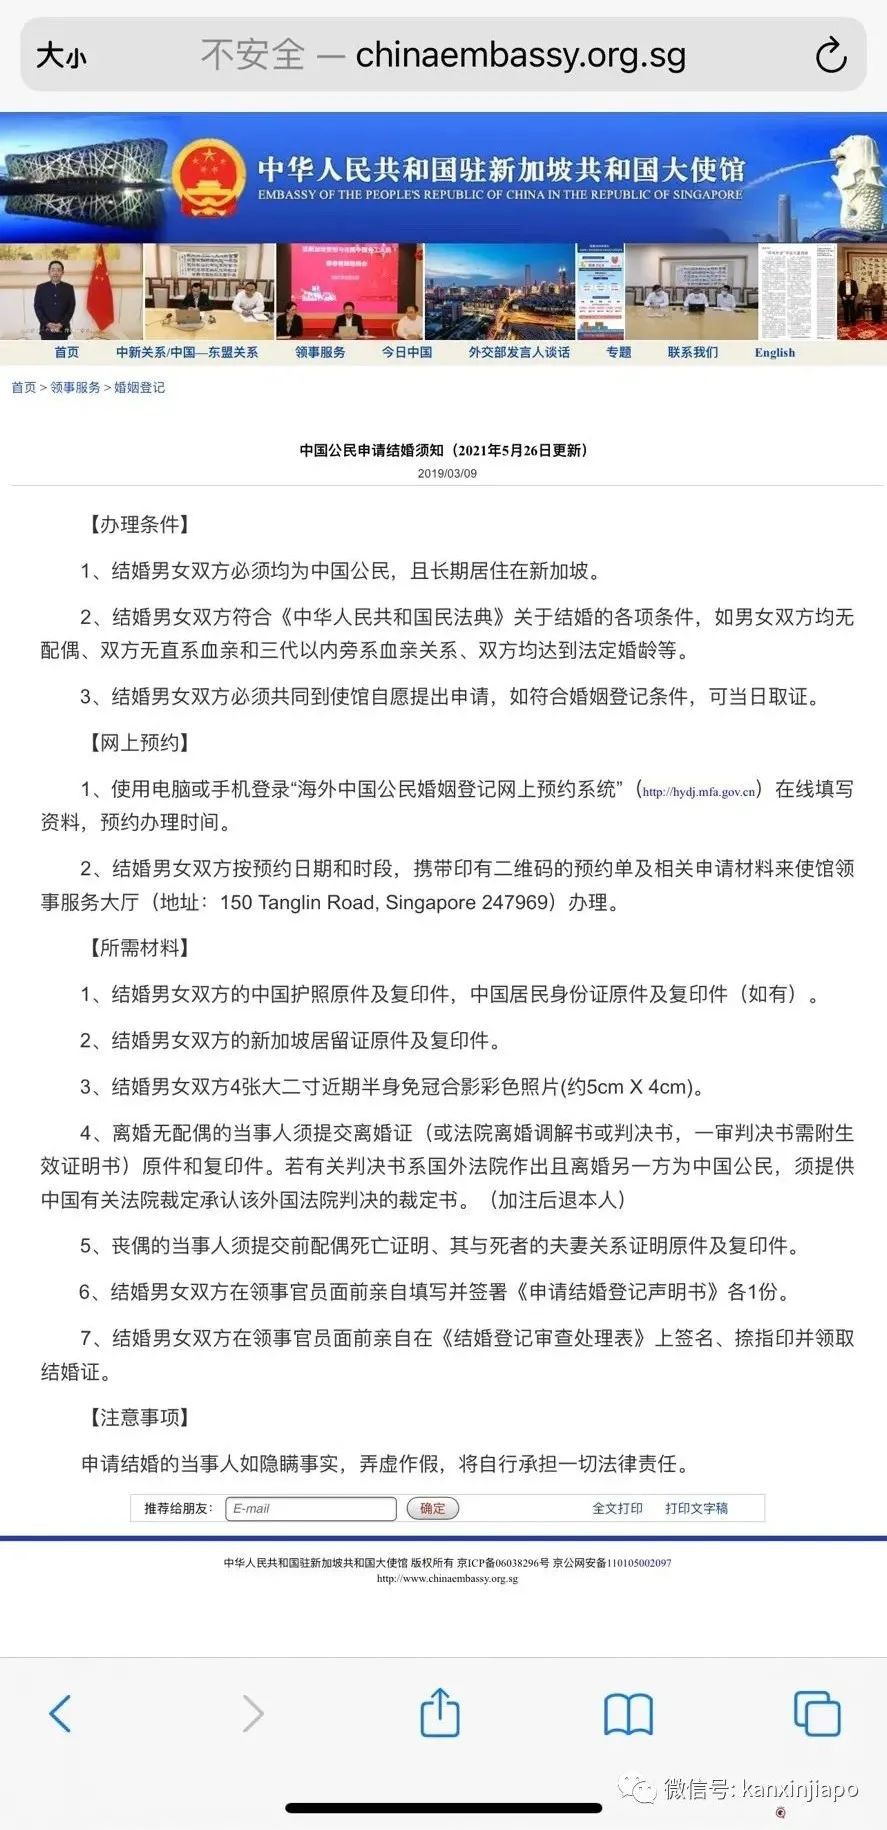 疫情期間，中國公民如何在新加坡辦理結婚證？